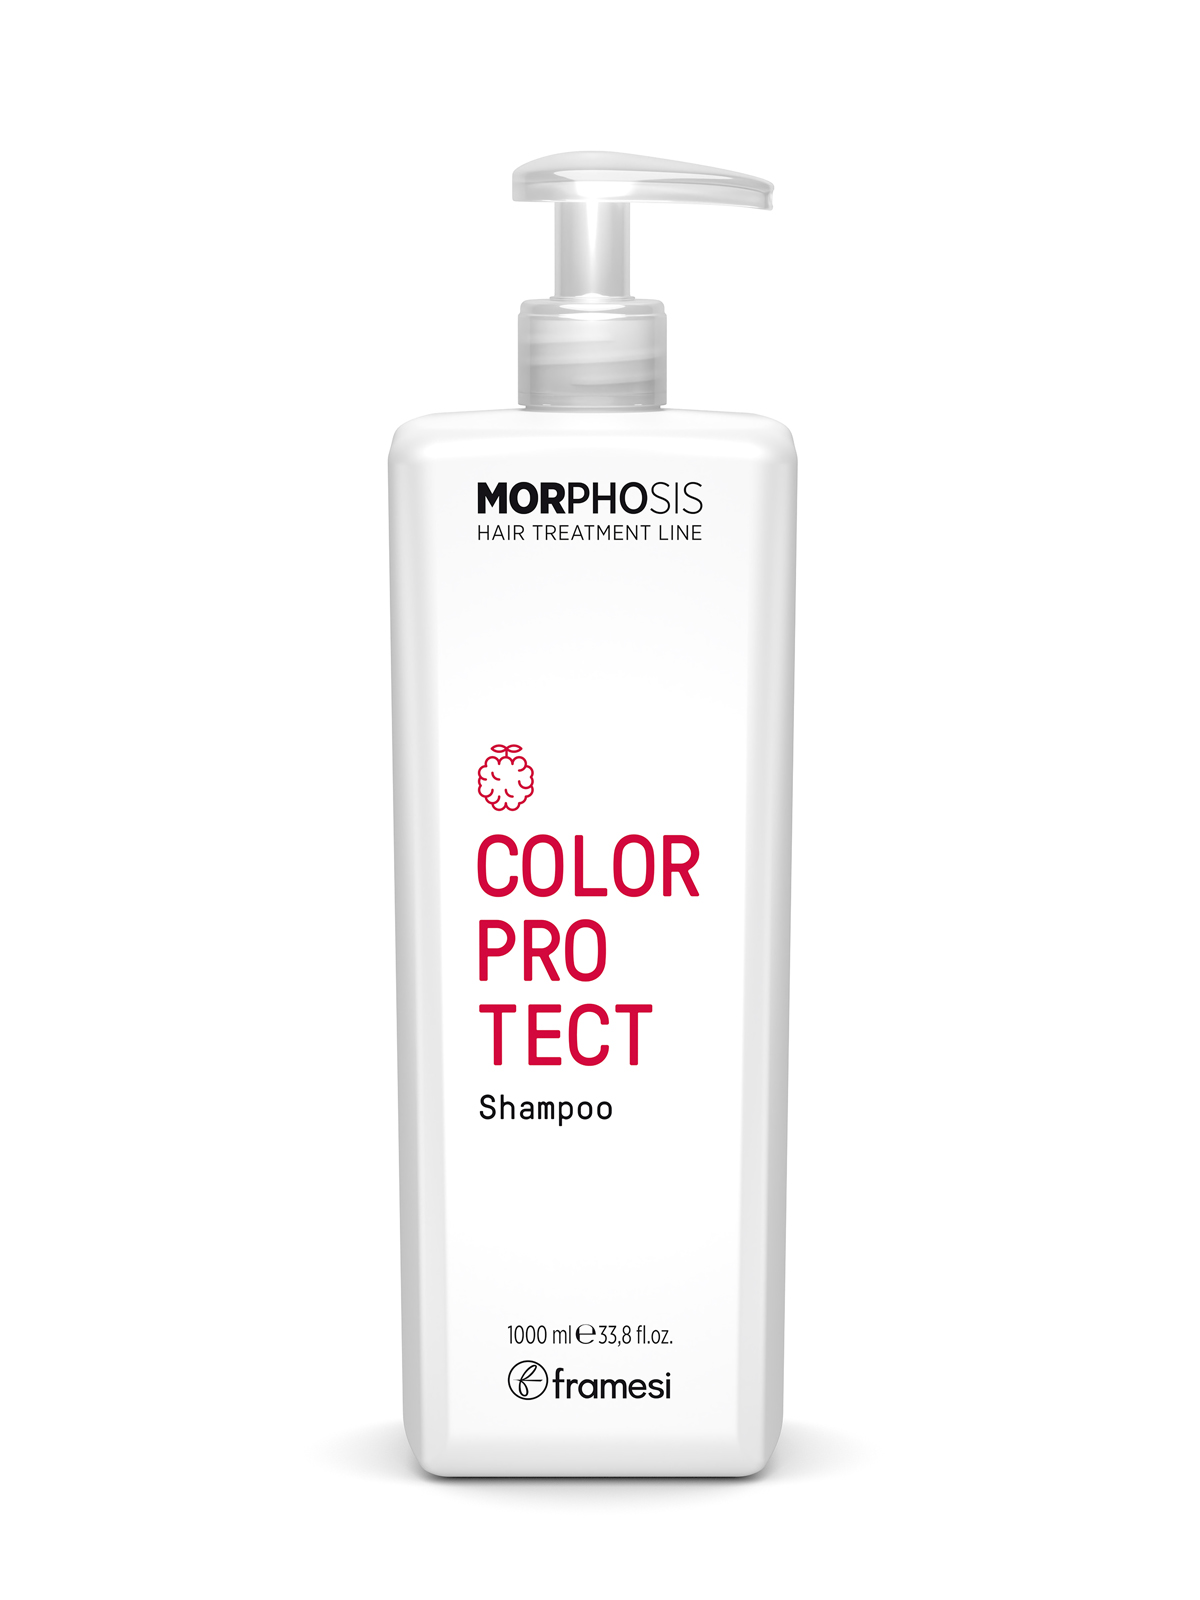 Шампунь Framesi Color protect shampoo для окрашенных волос 1000 мл шампунь алхимик для натуральных и окрашенных волос серебрянный alchemic shampoo